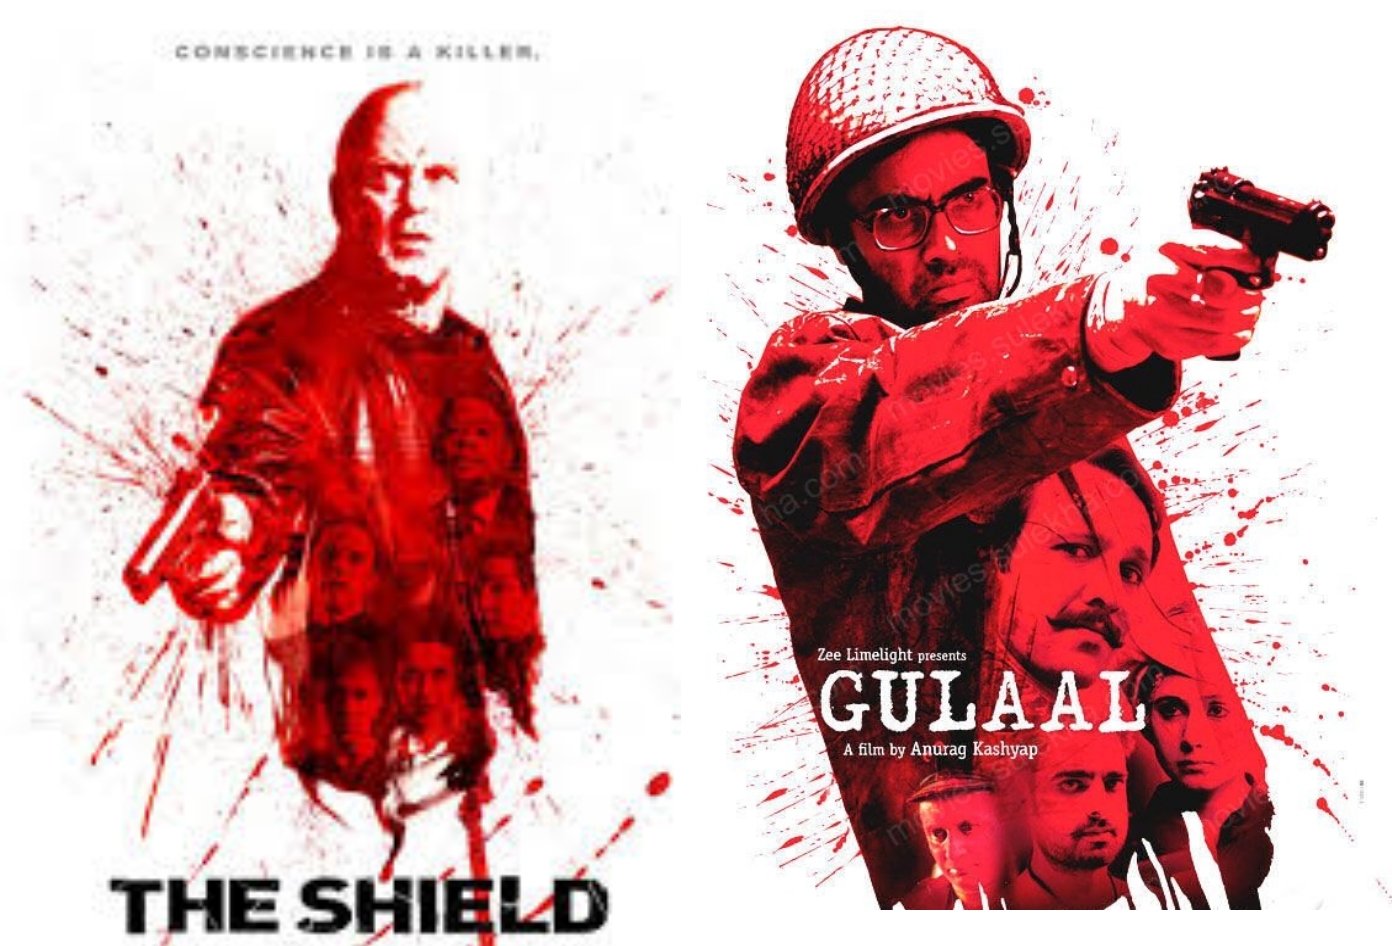 २००९मध्ये प्रदर्शित झालेला 'गुलाल' चित्रपटाचे पोस्टर अमेरिकन ड्रामा 'The Shield – Season 5'शी मिळते जुळते आहे.